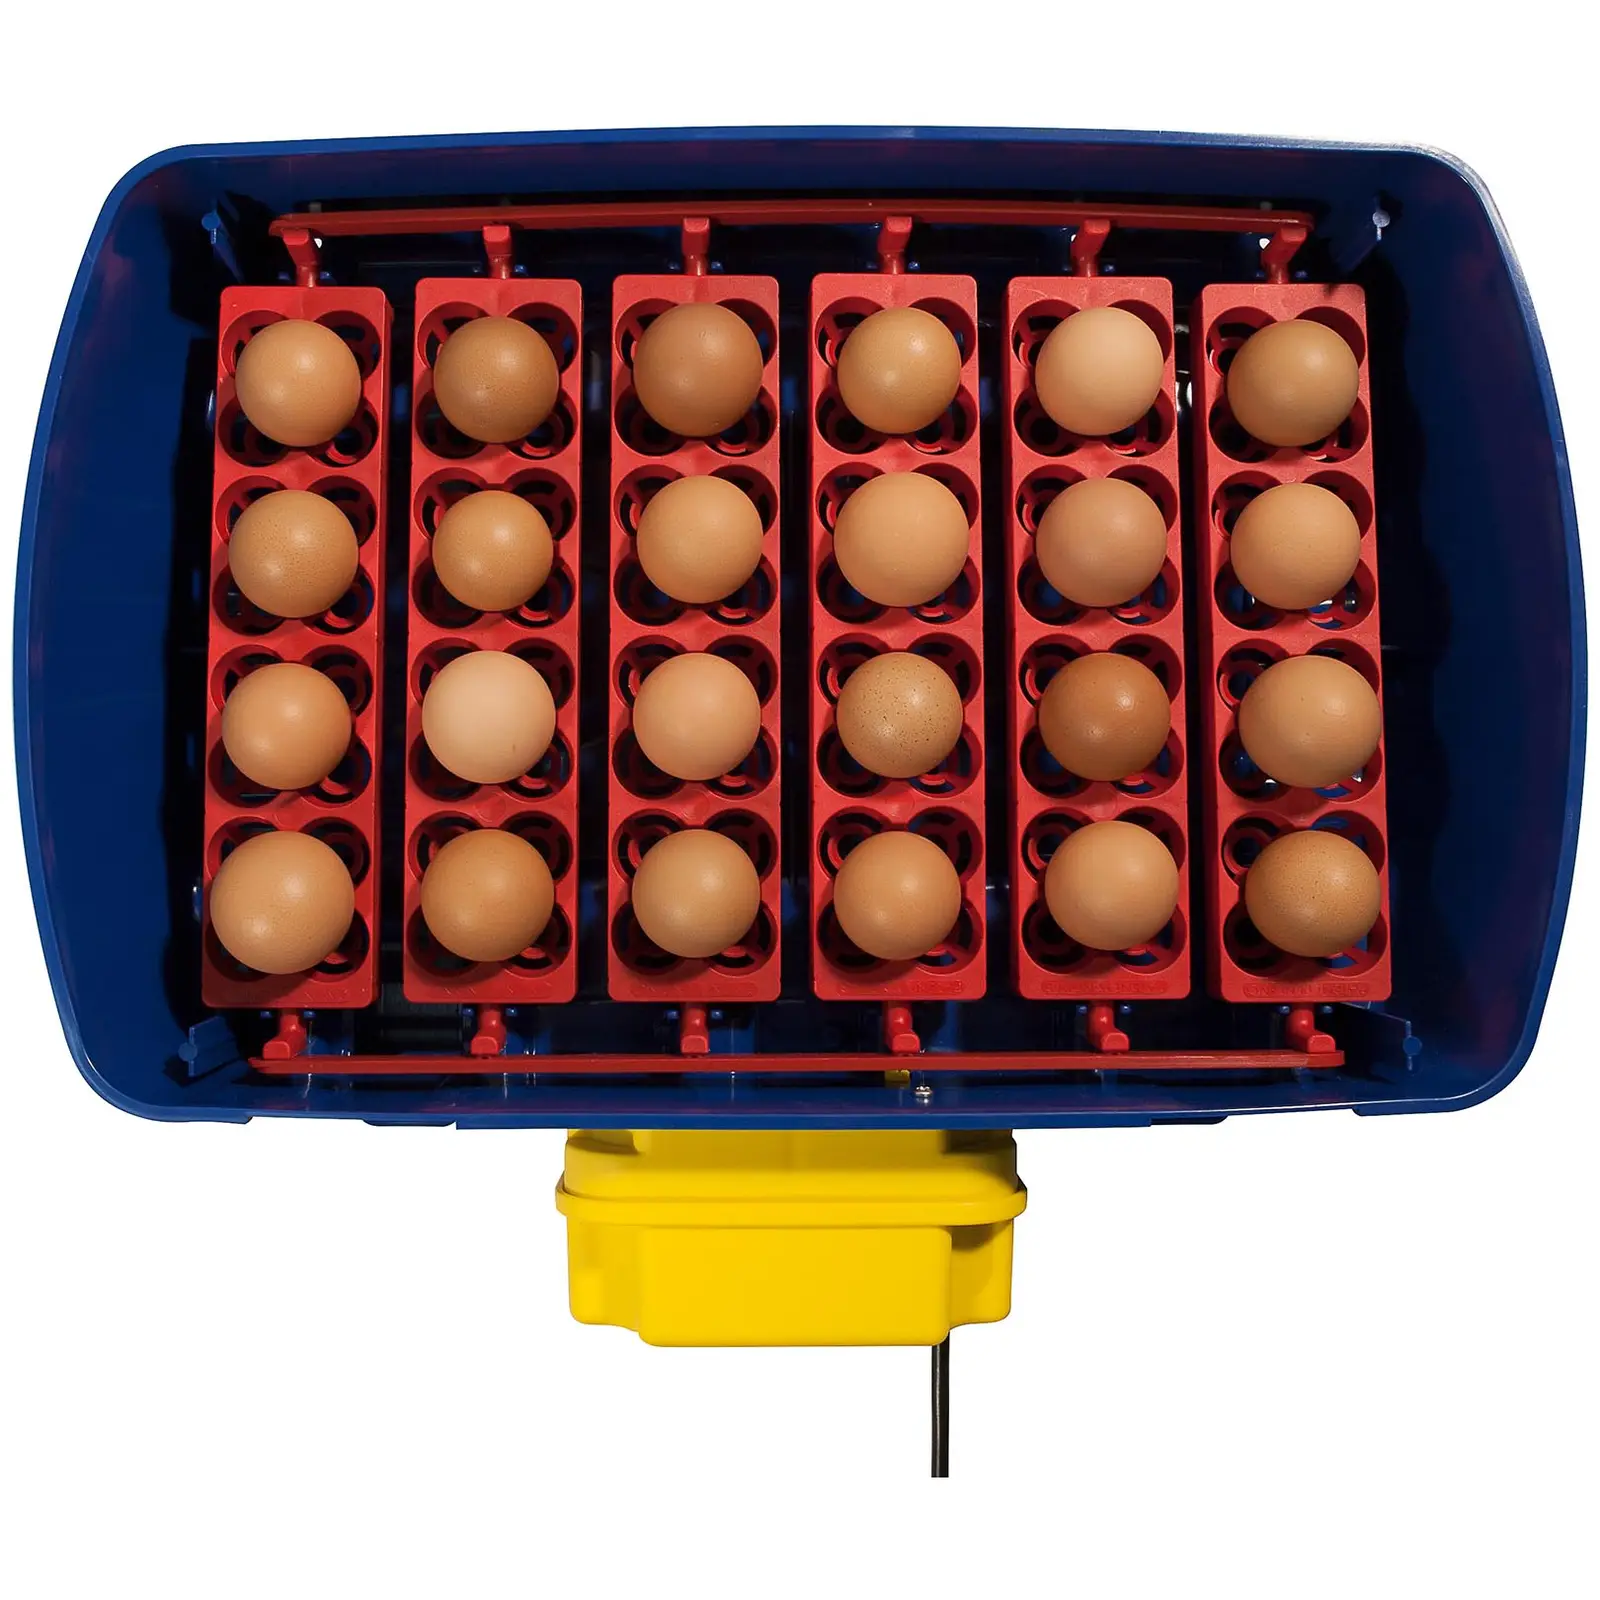 Brutapparat - 24 Eier - inklusive Bewässerungssystem - vollautomatisch - 4